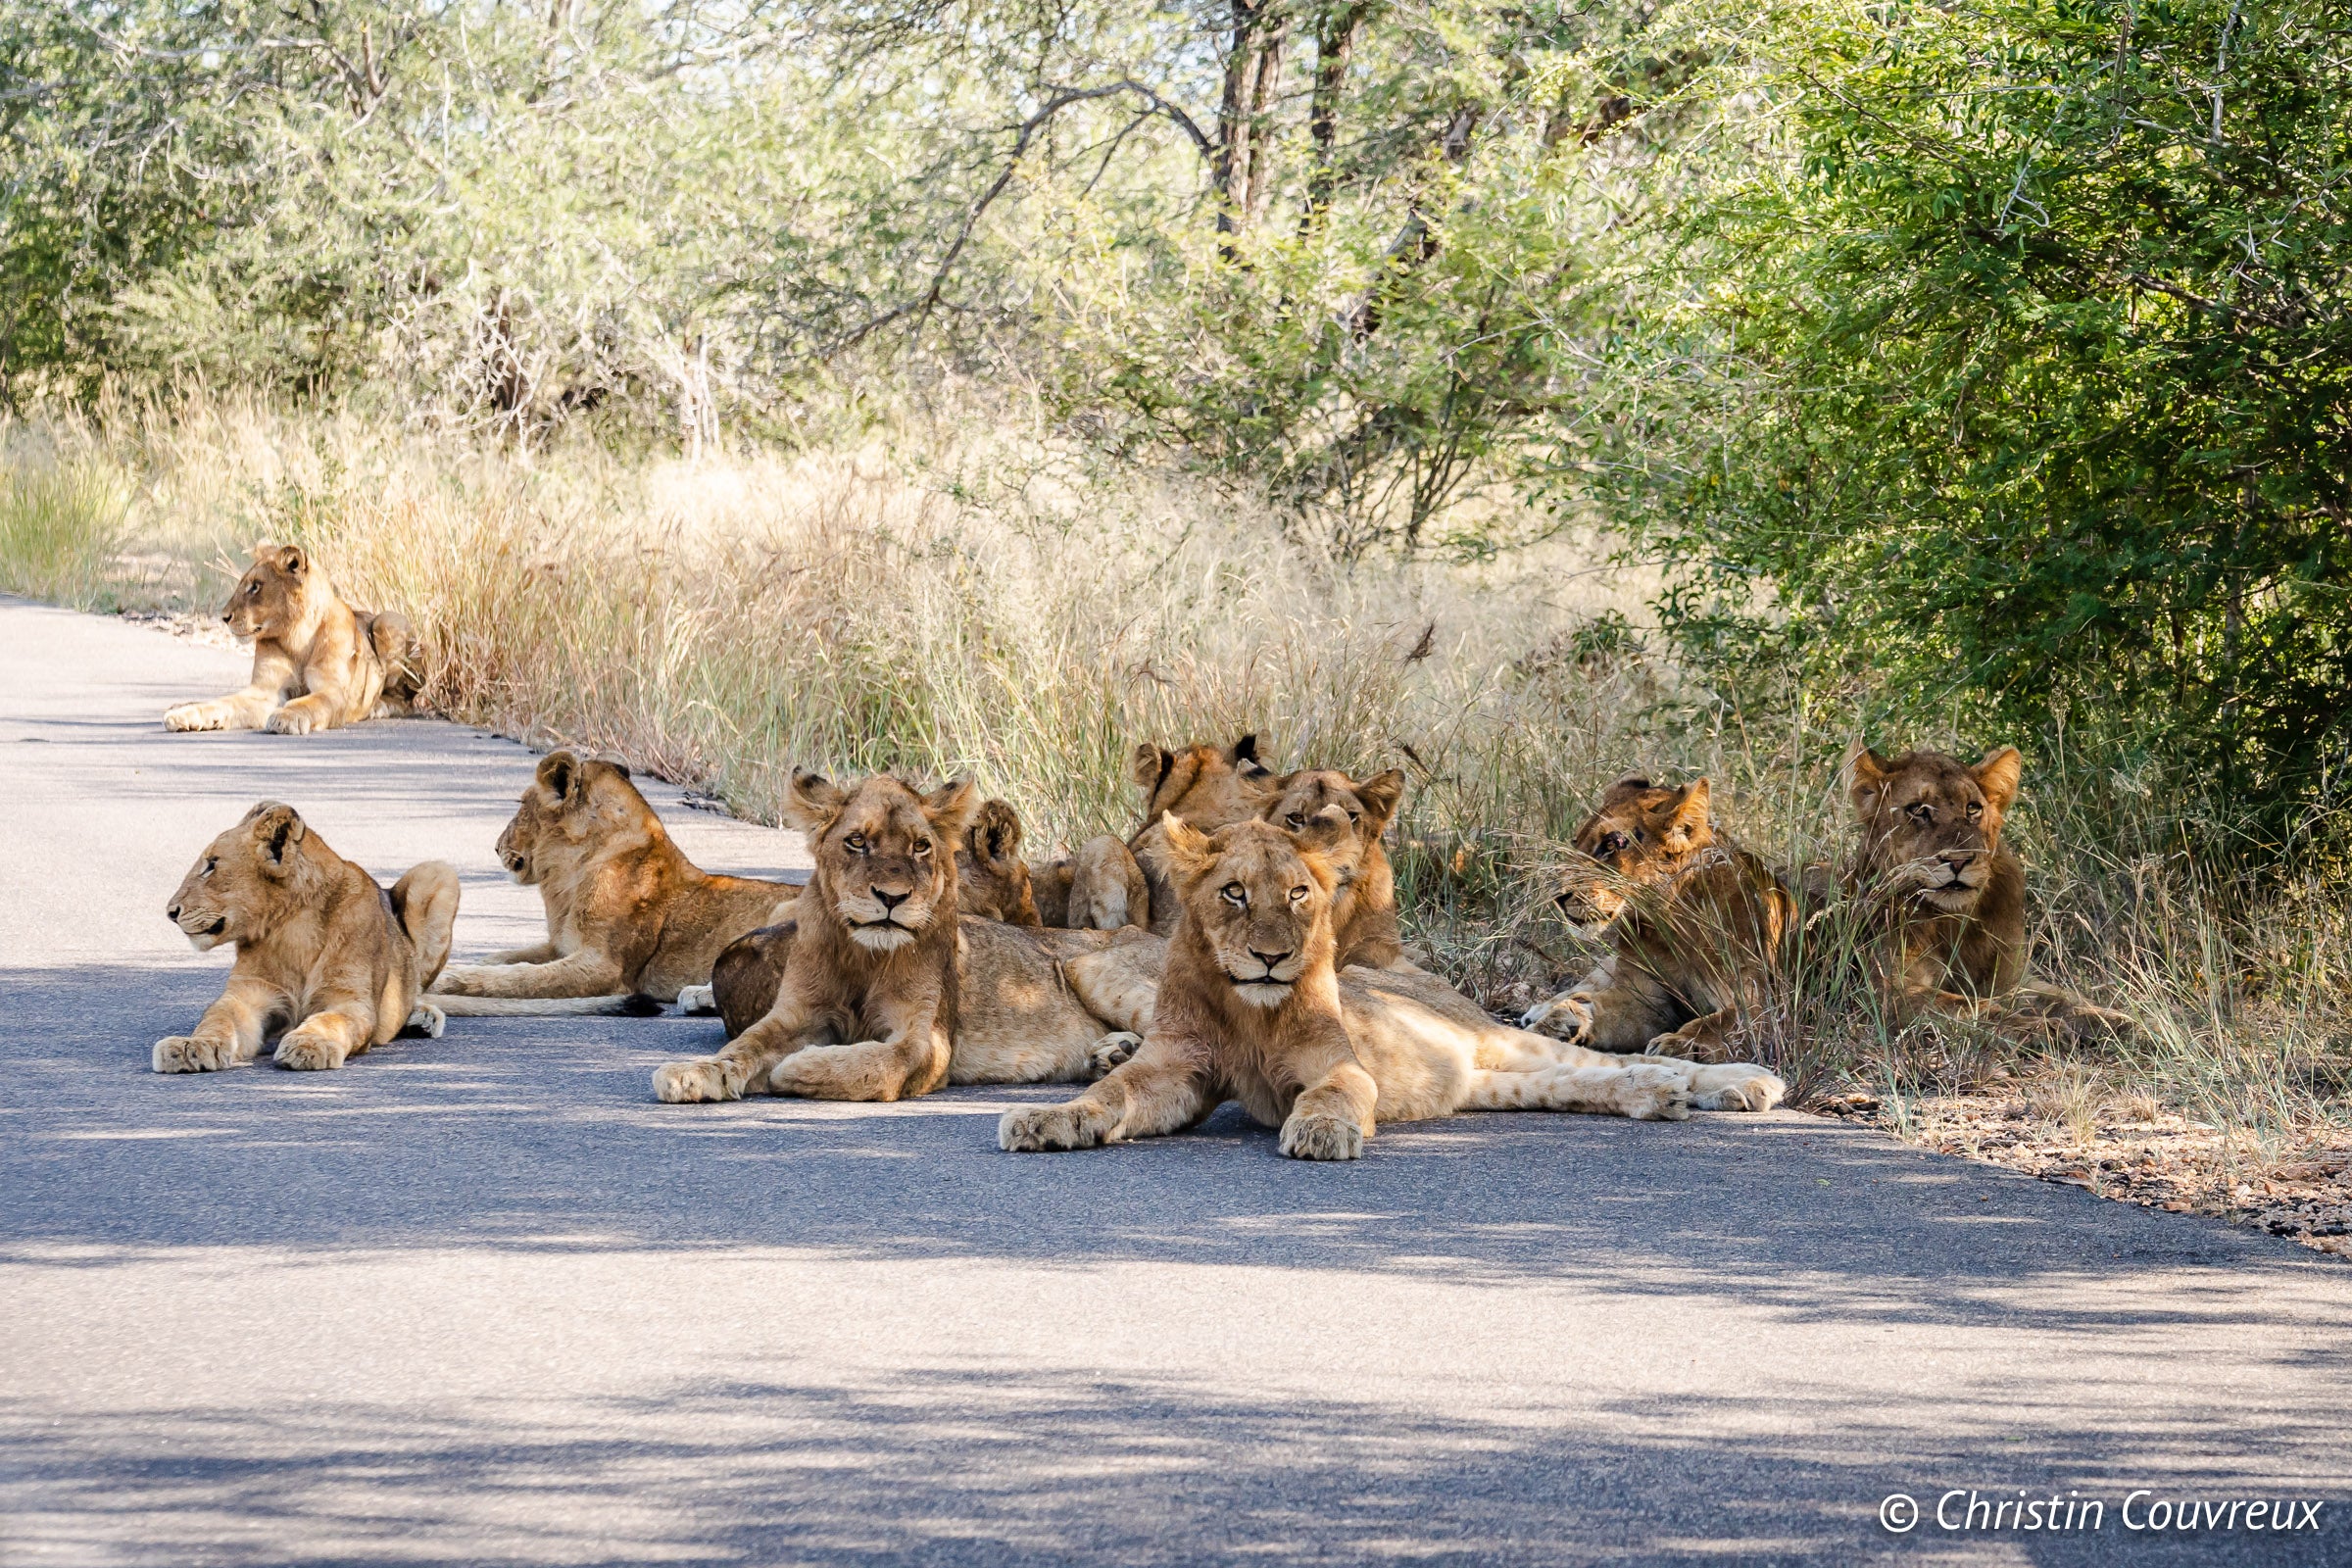 Lions in Kruger